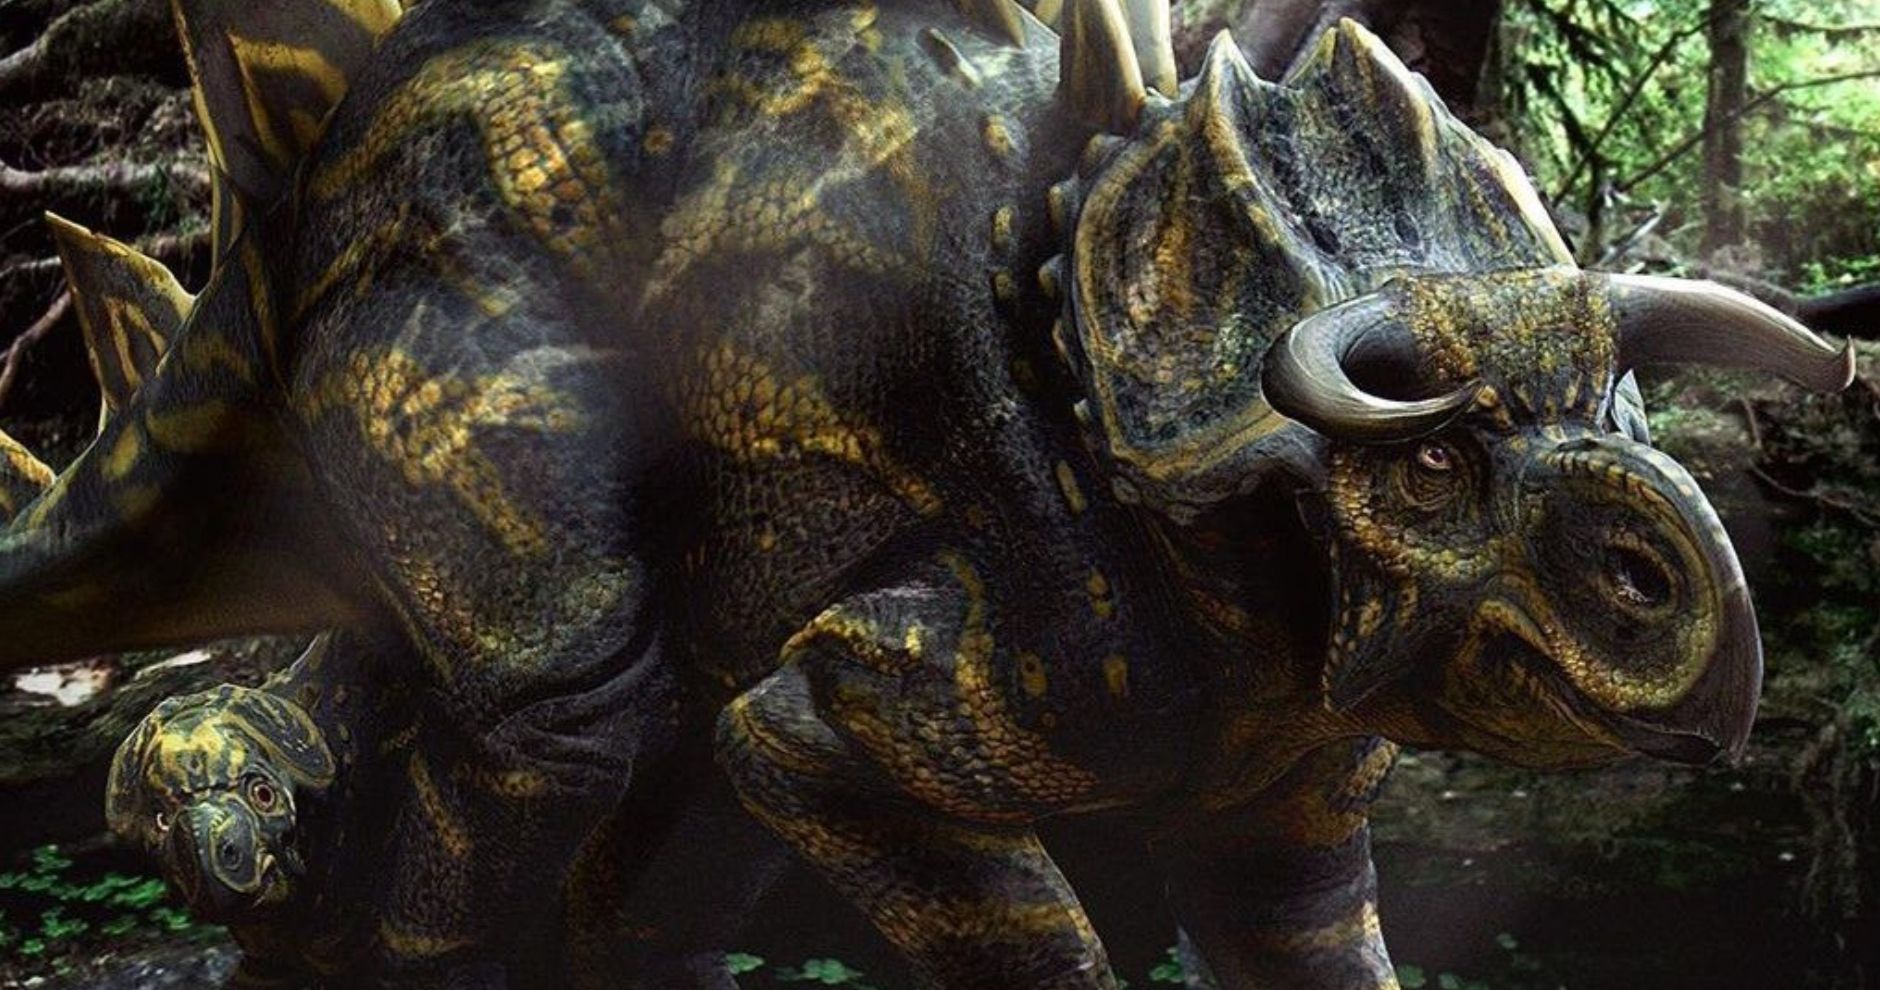 Jurassic World Concept Art Reveals Never-Before-Seen Hybrid Dinosaur